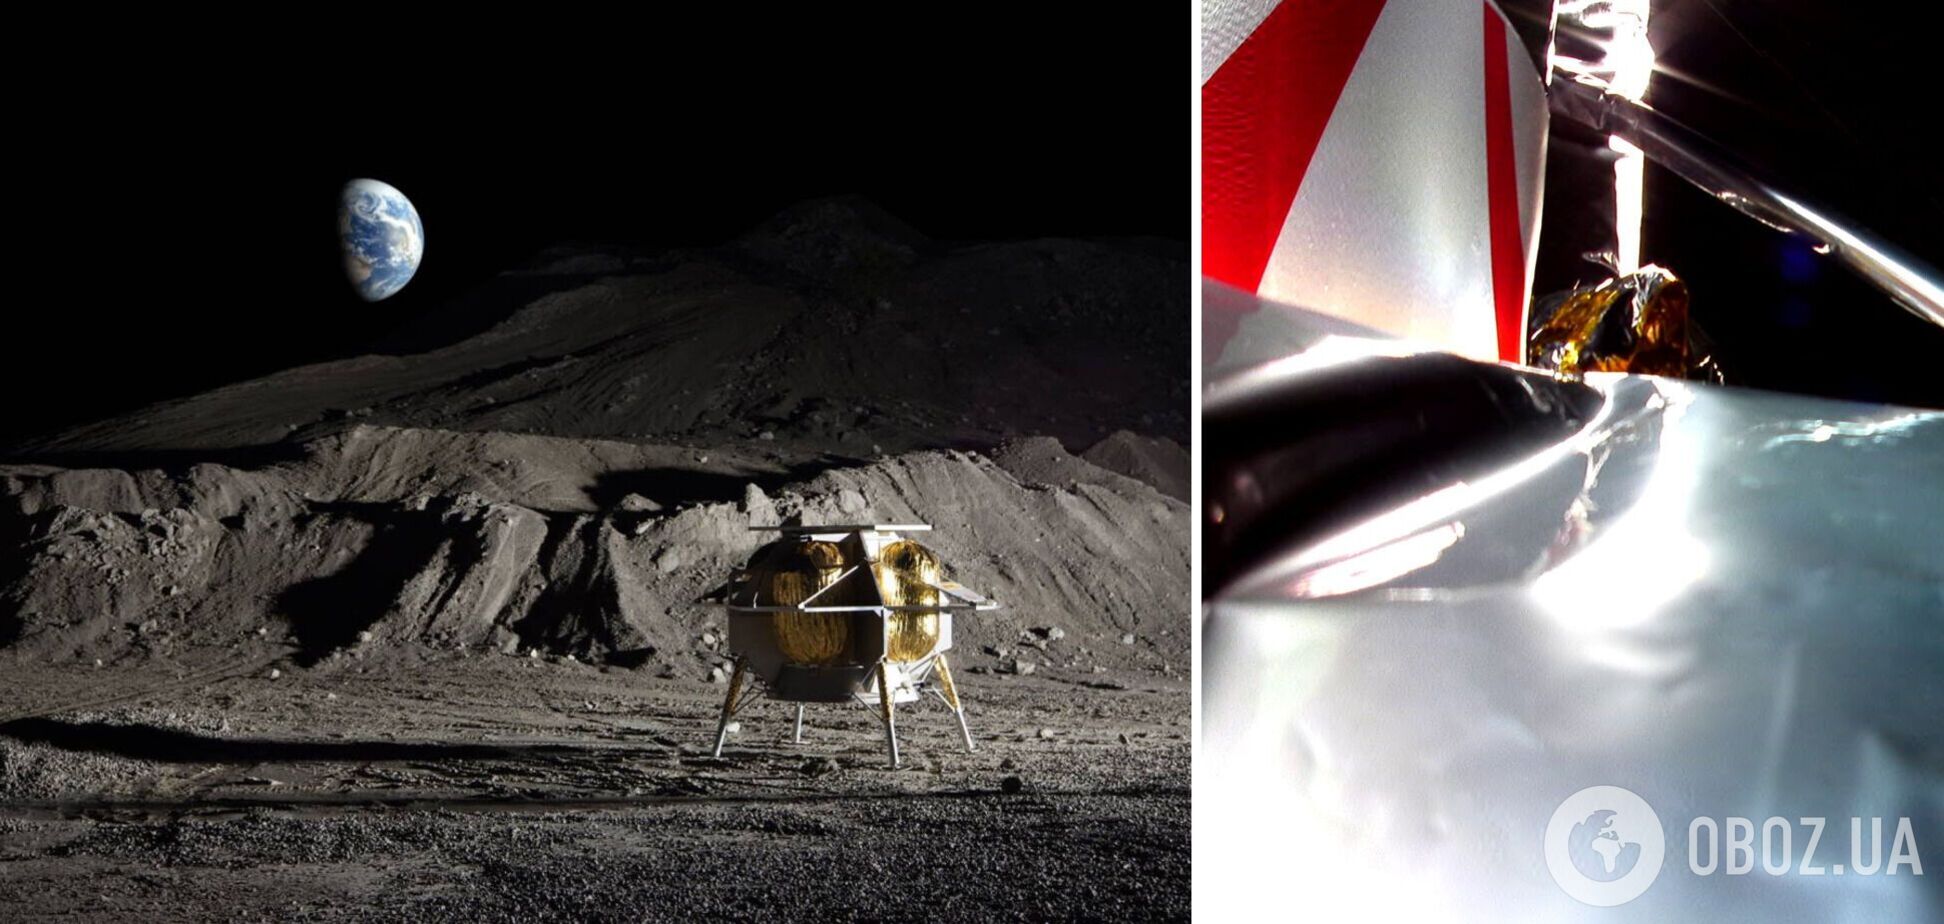 Повернення NASA на Місяць пішло не за планом: апарат у 'критичному' стані і прямує до загибелі